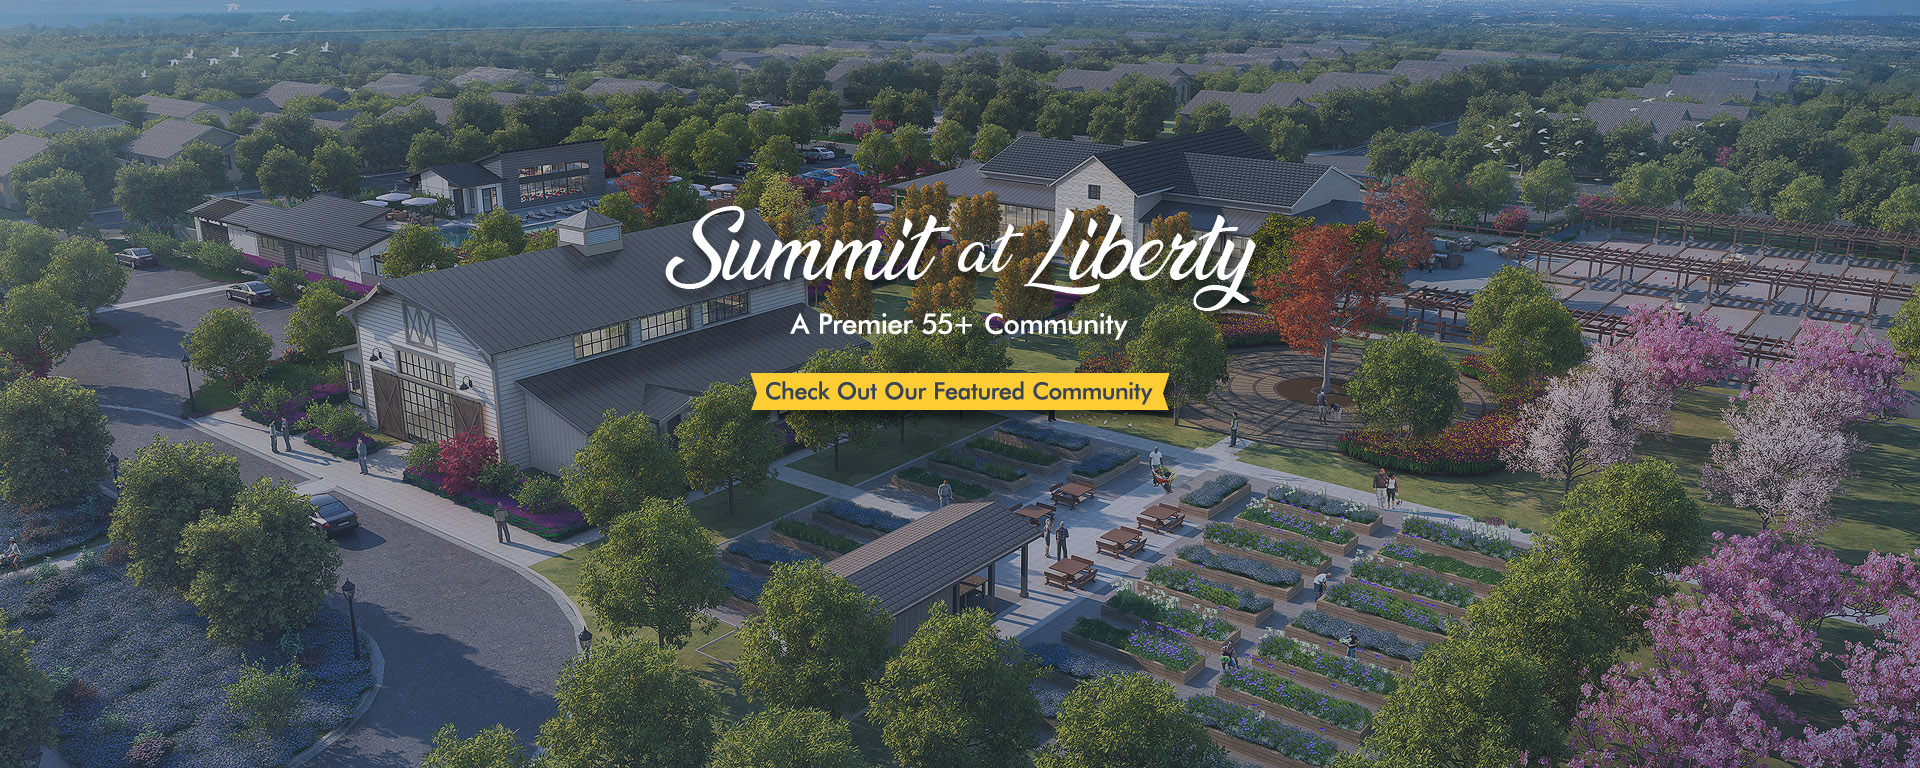 Summit at Liberty